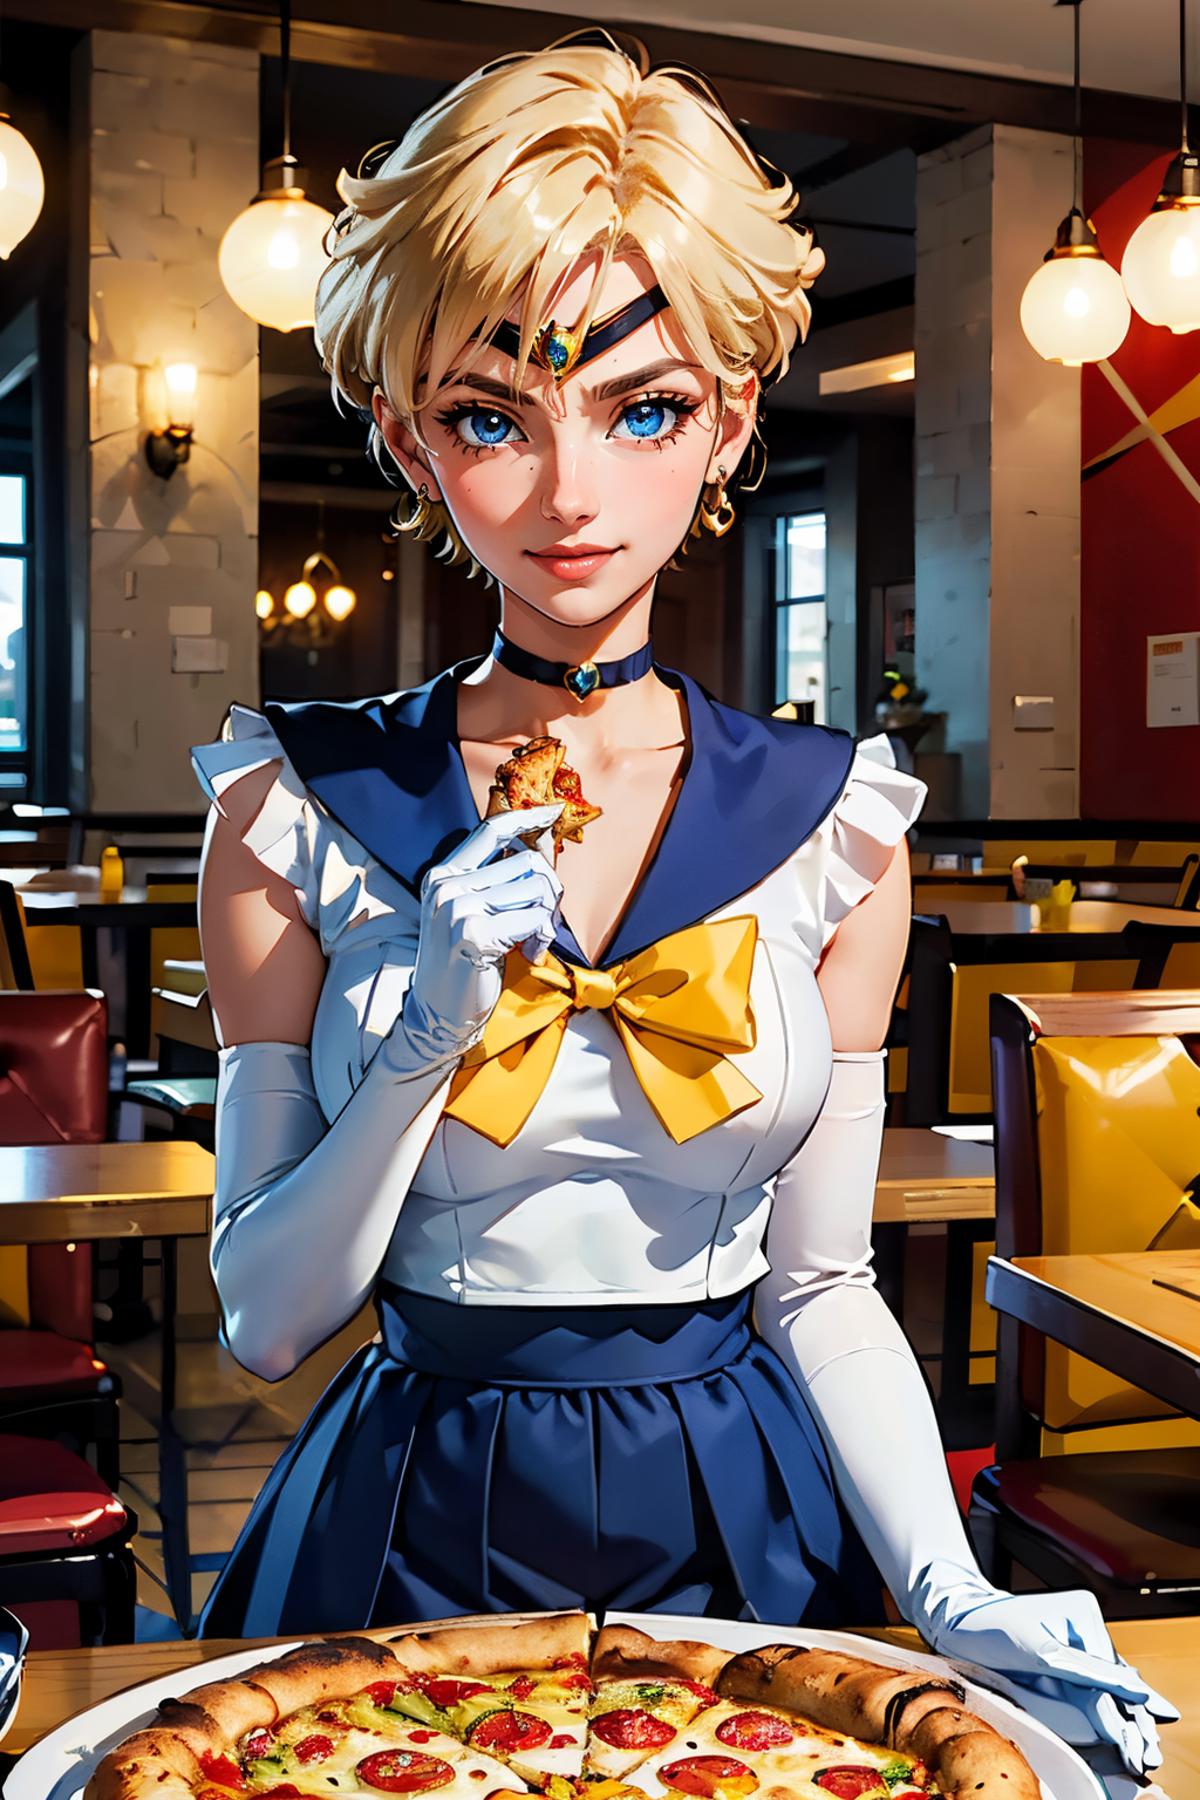 Haruka Tenoh/Sailor Uranus - Sailor Moon image by wikkitikki